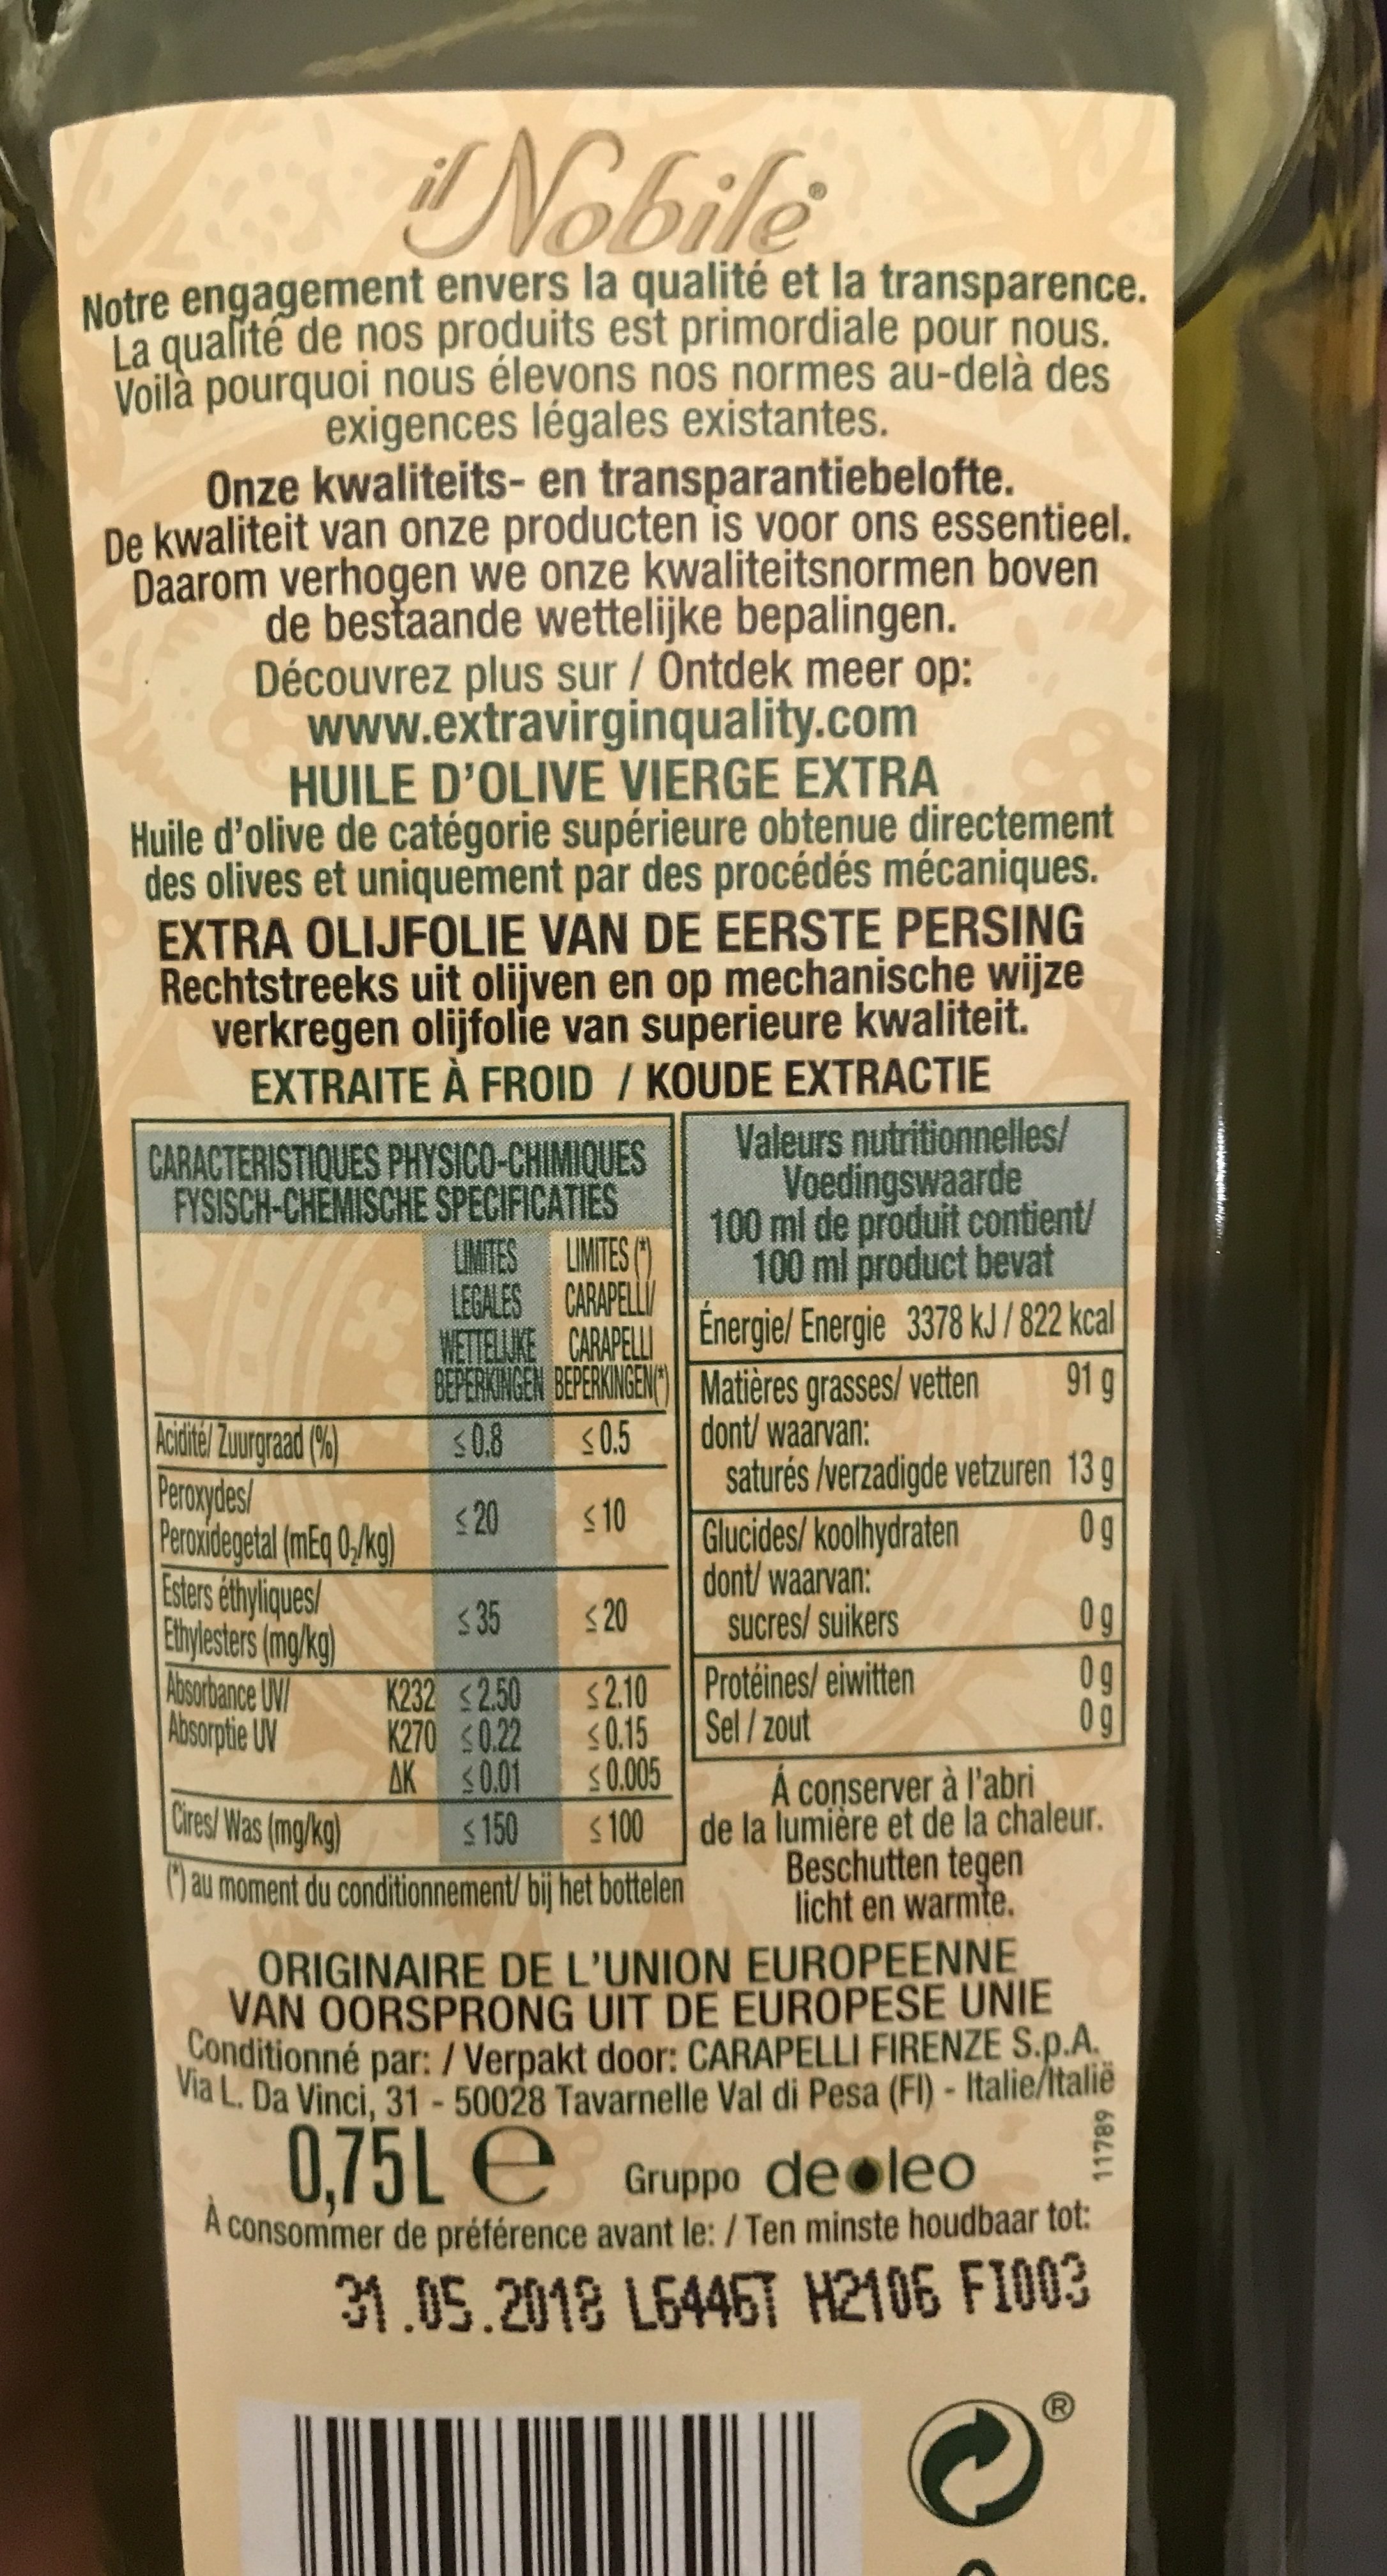 Huile d olive - Ingredients - fr